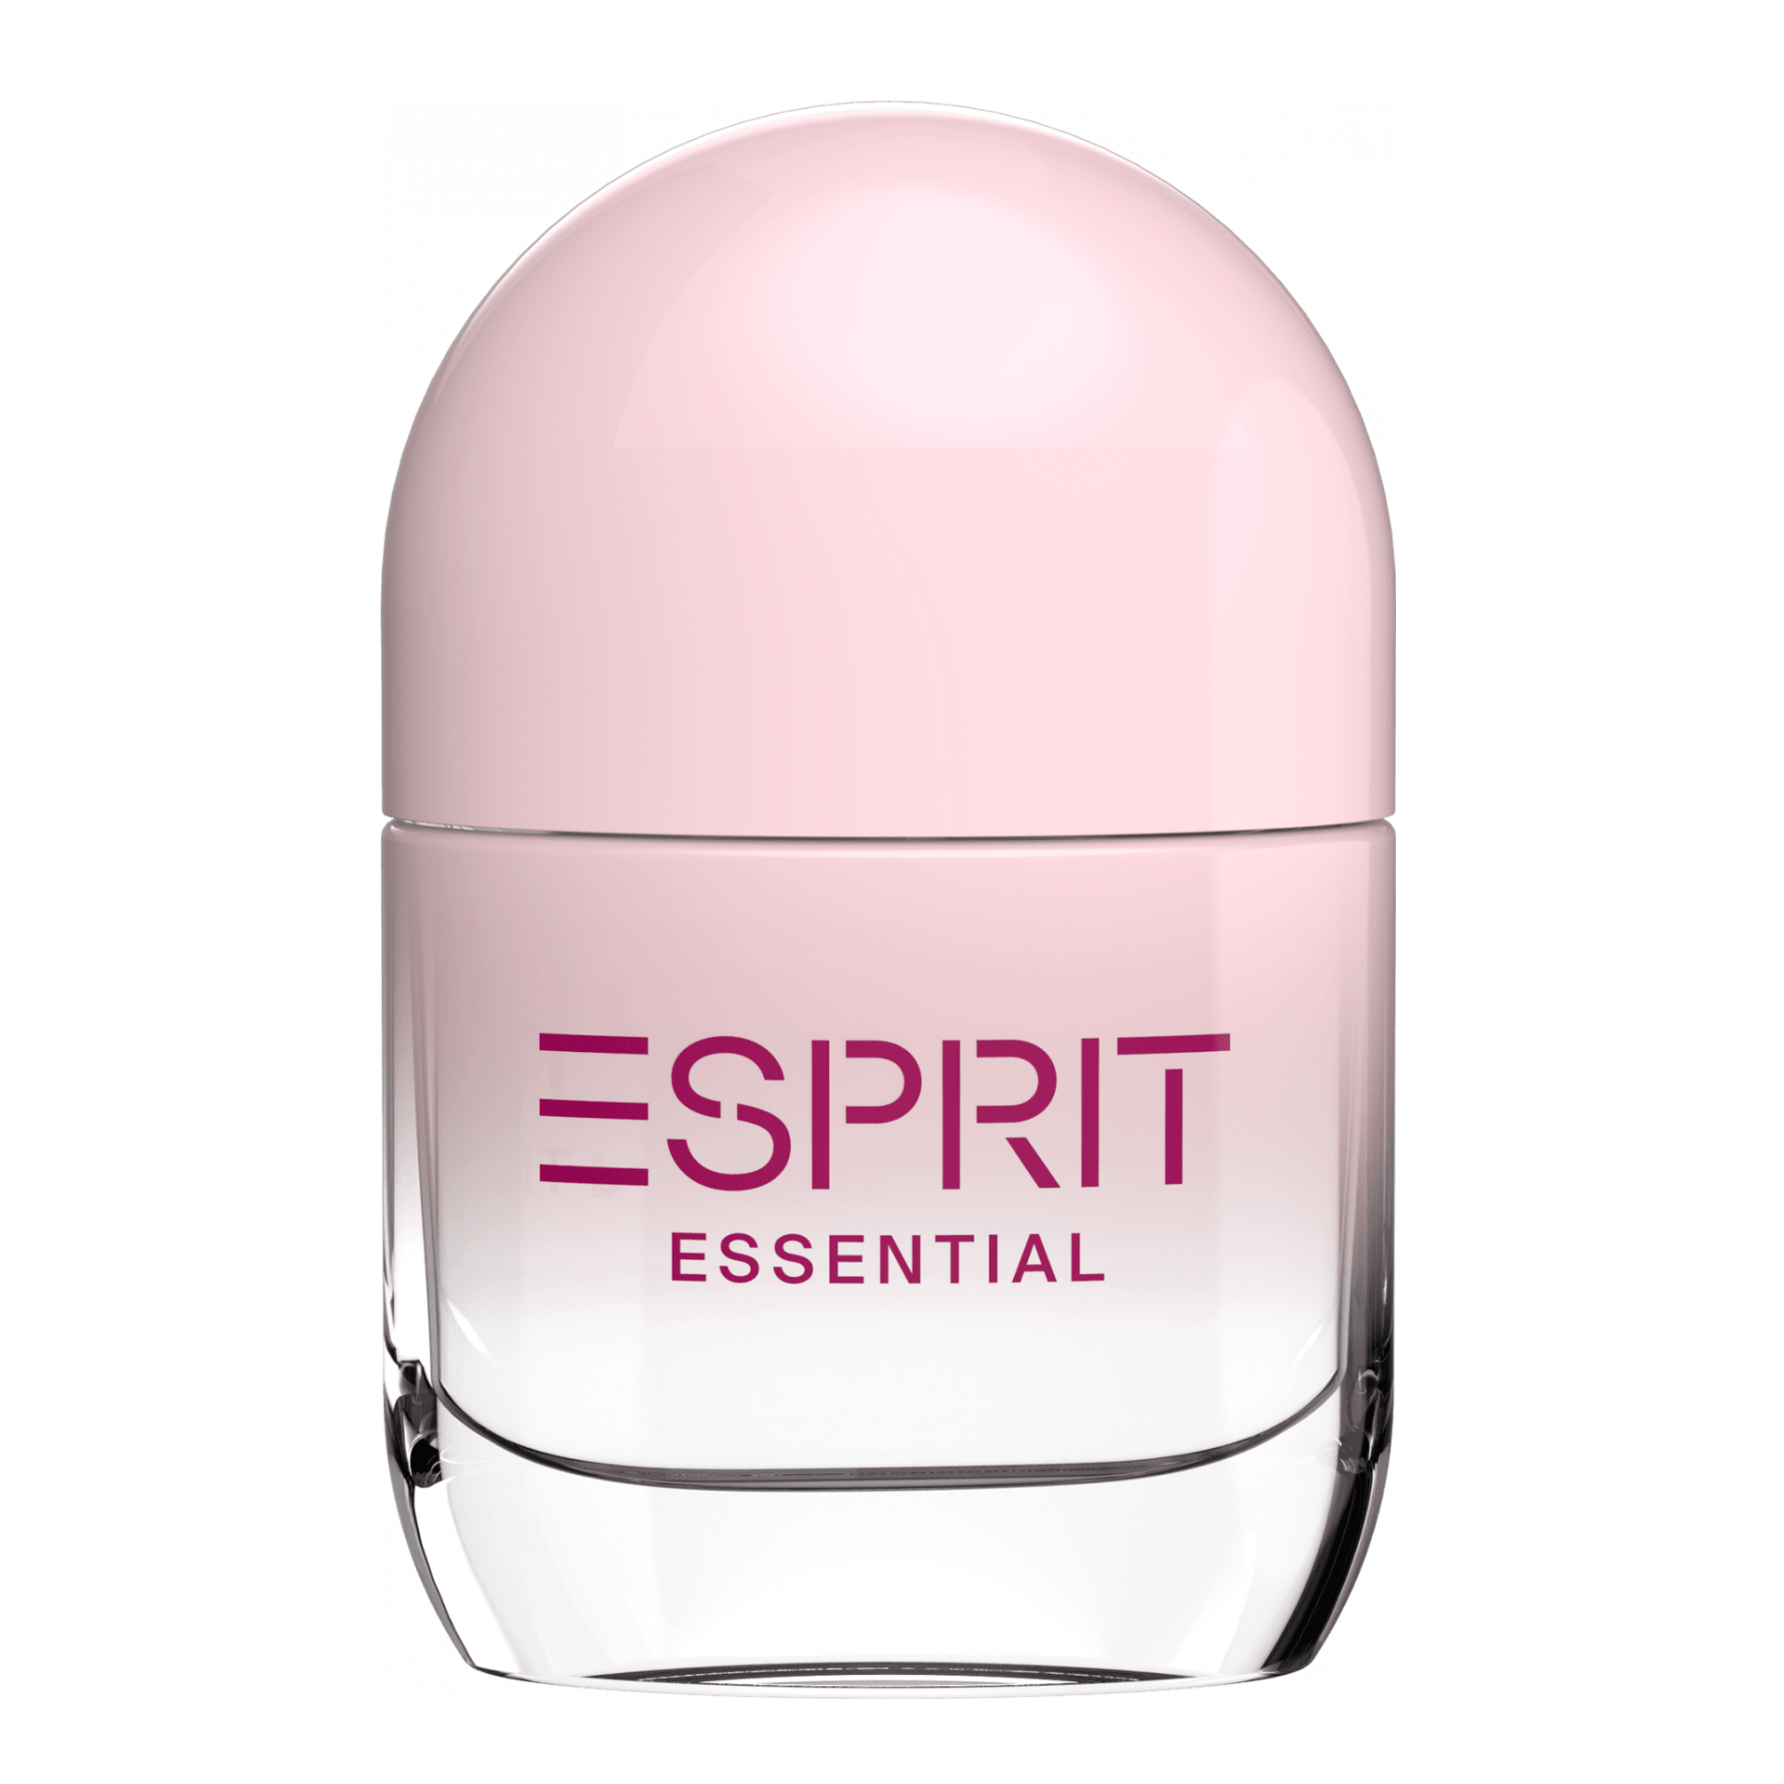 Парфюмерная вода Esprit Essential 20 мл лосьон парфюмерный для женщин l esprit de la france last cherry 15 мл